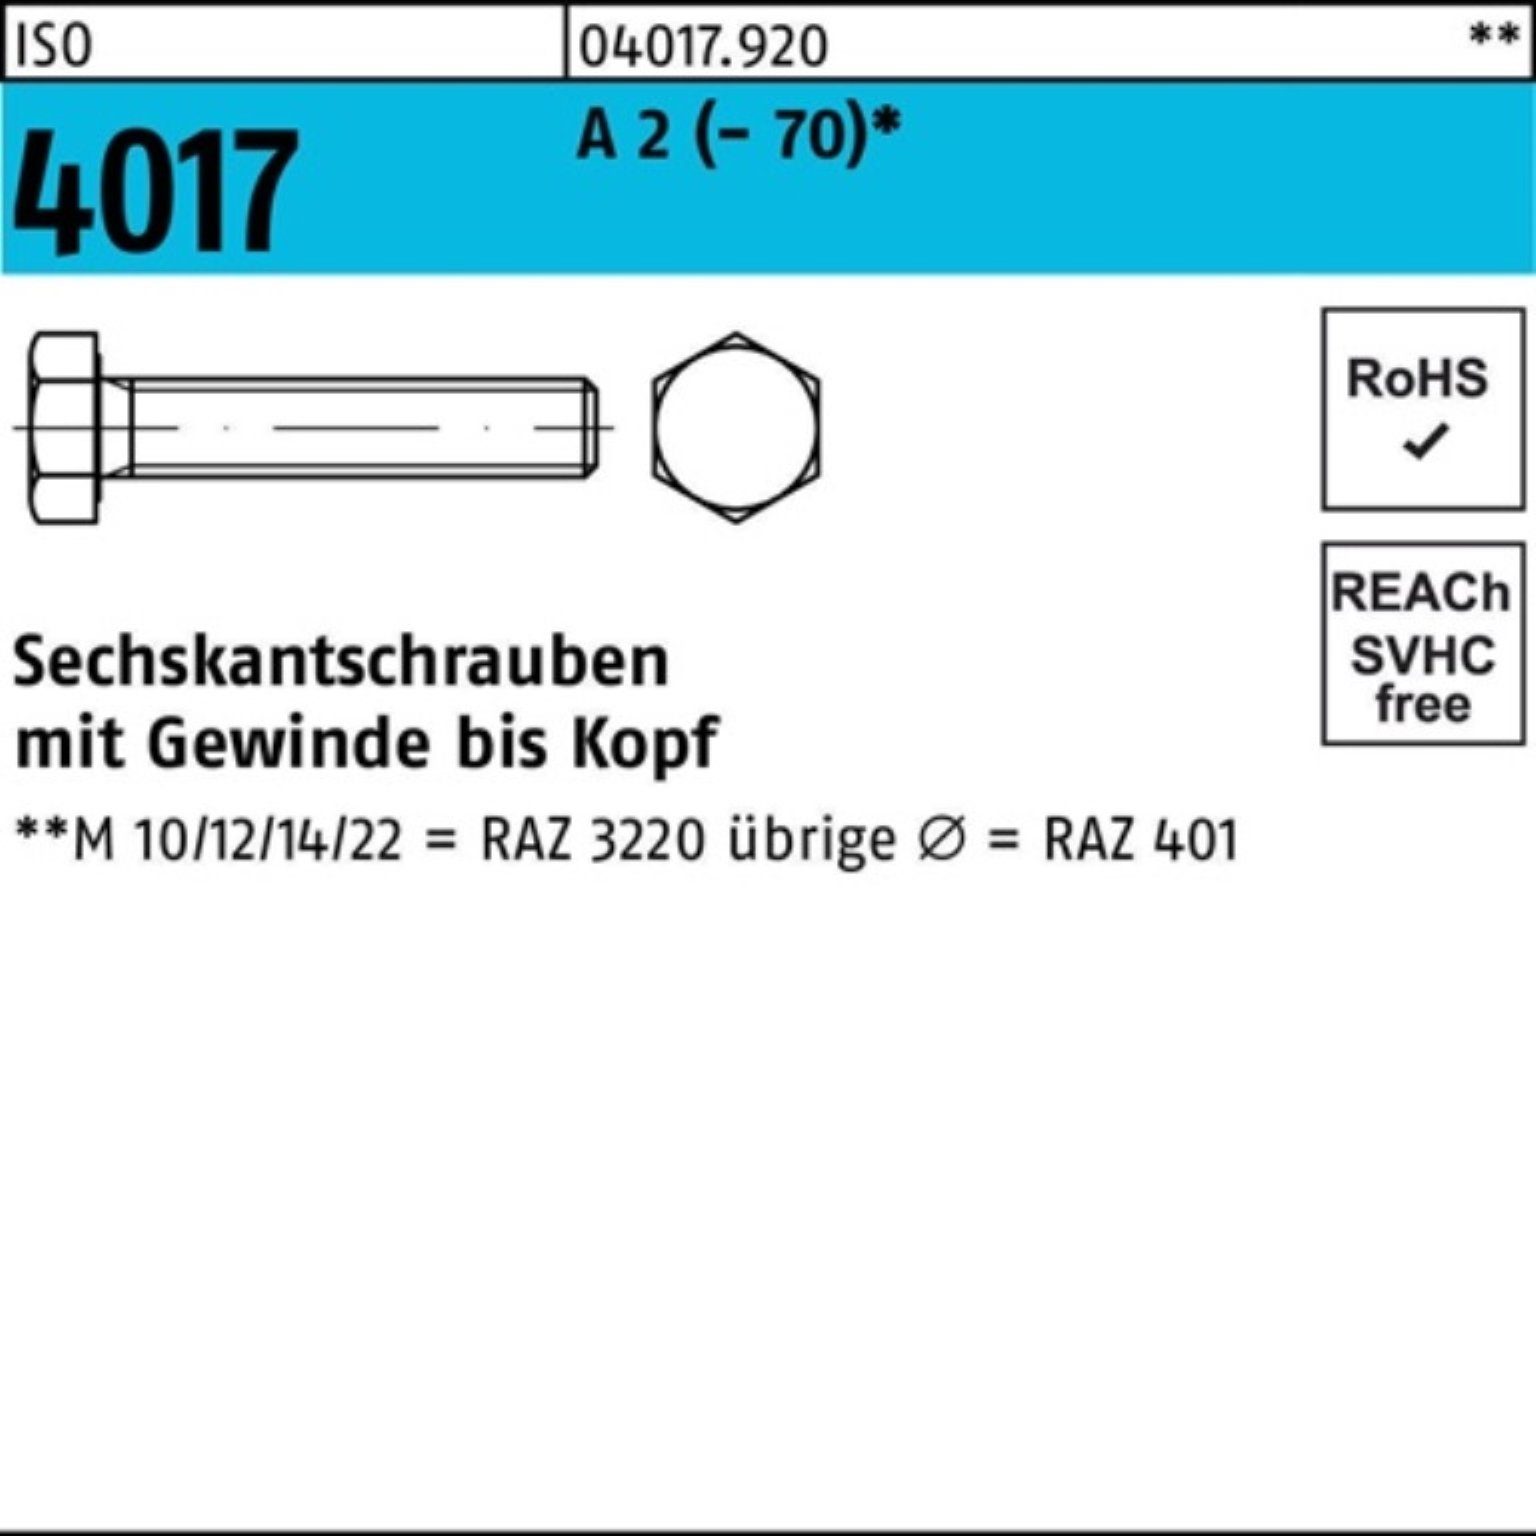 M6x A (70) 200er Bufab Sechskantschraube 4017 VG Sechskantschraube ISO Stück Pack 2 22 200